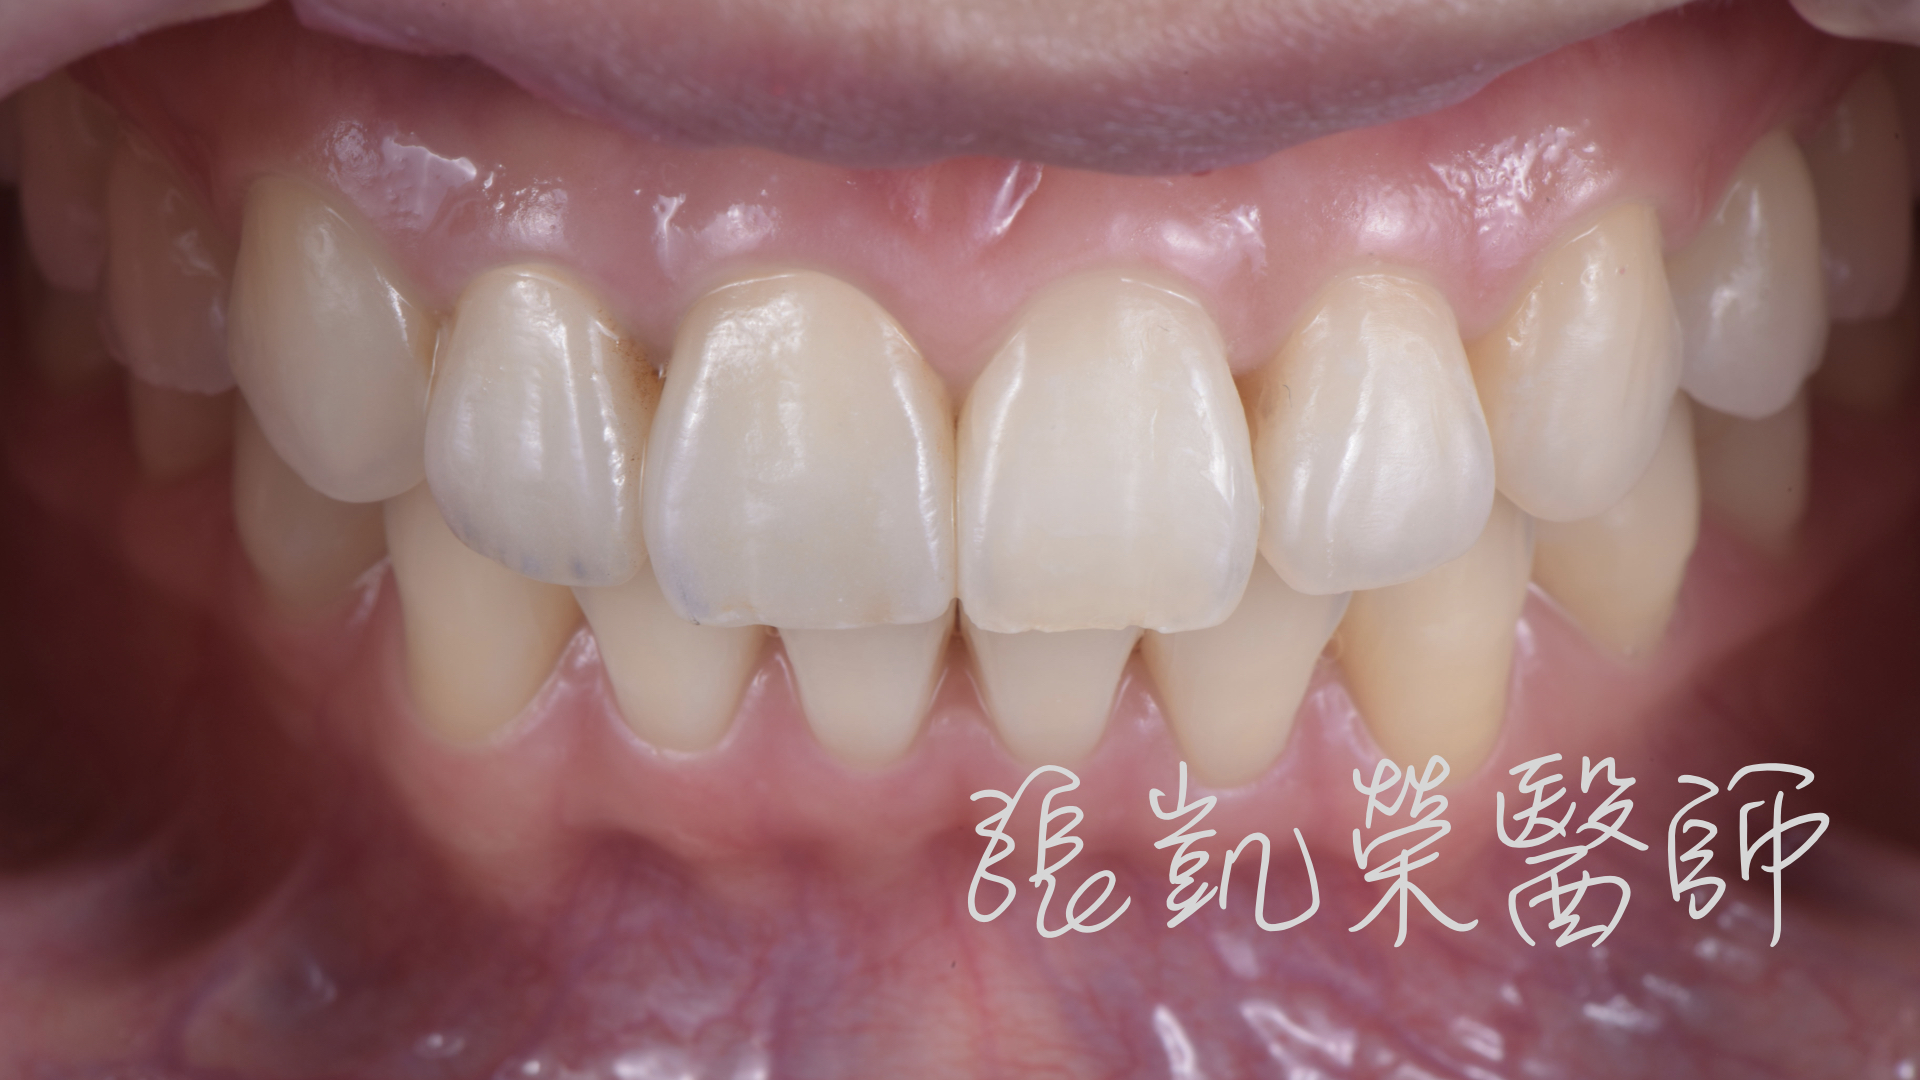 晶湛牙醫診所: E-max 全瓷冠